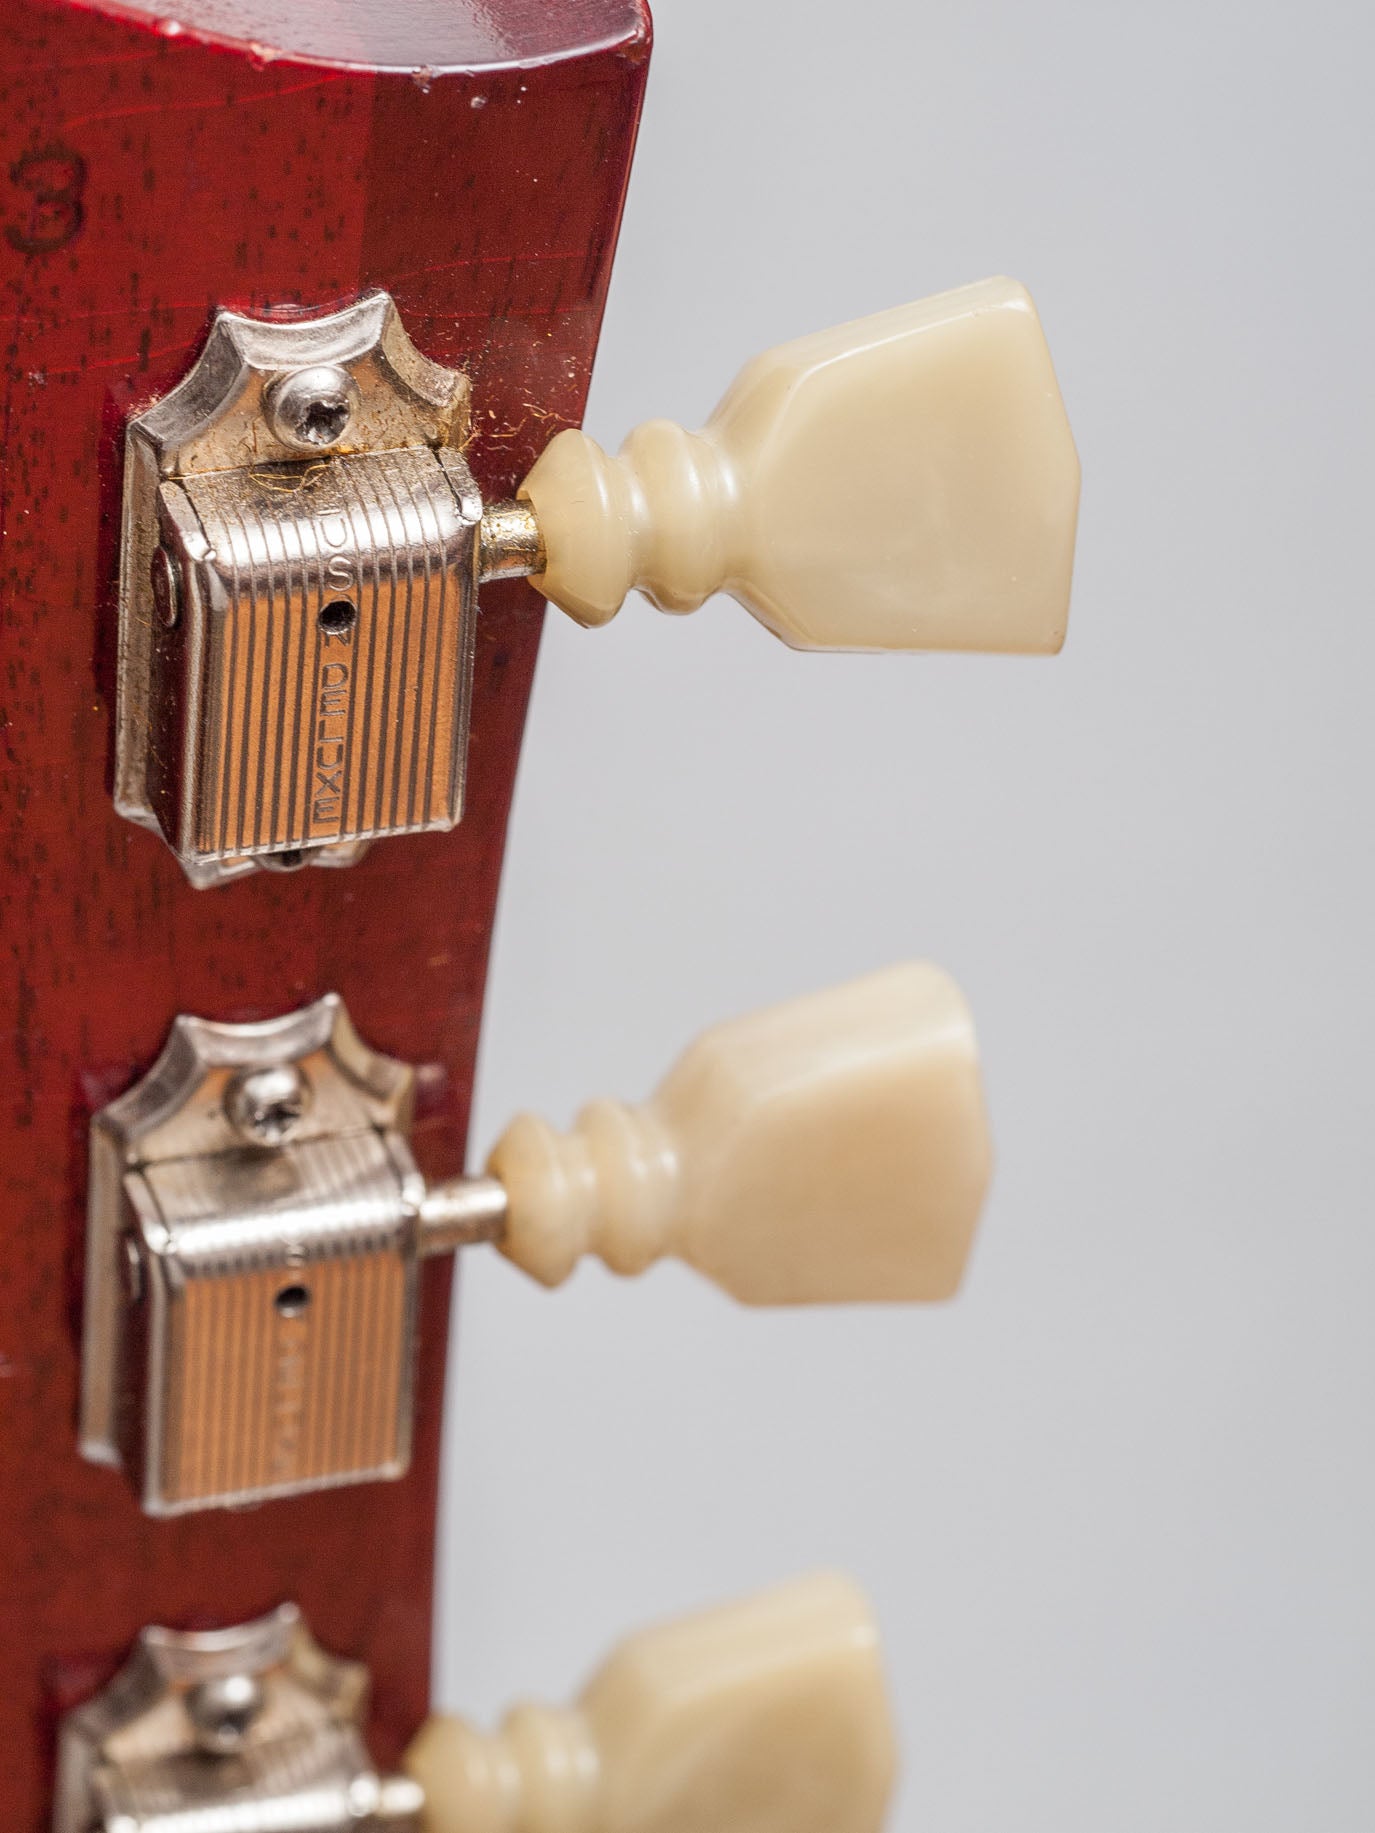 1963 Gibson Les Paul SG